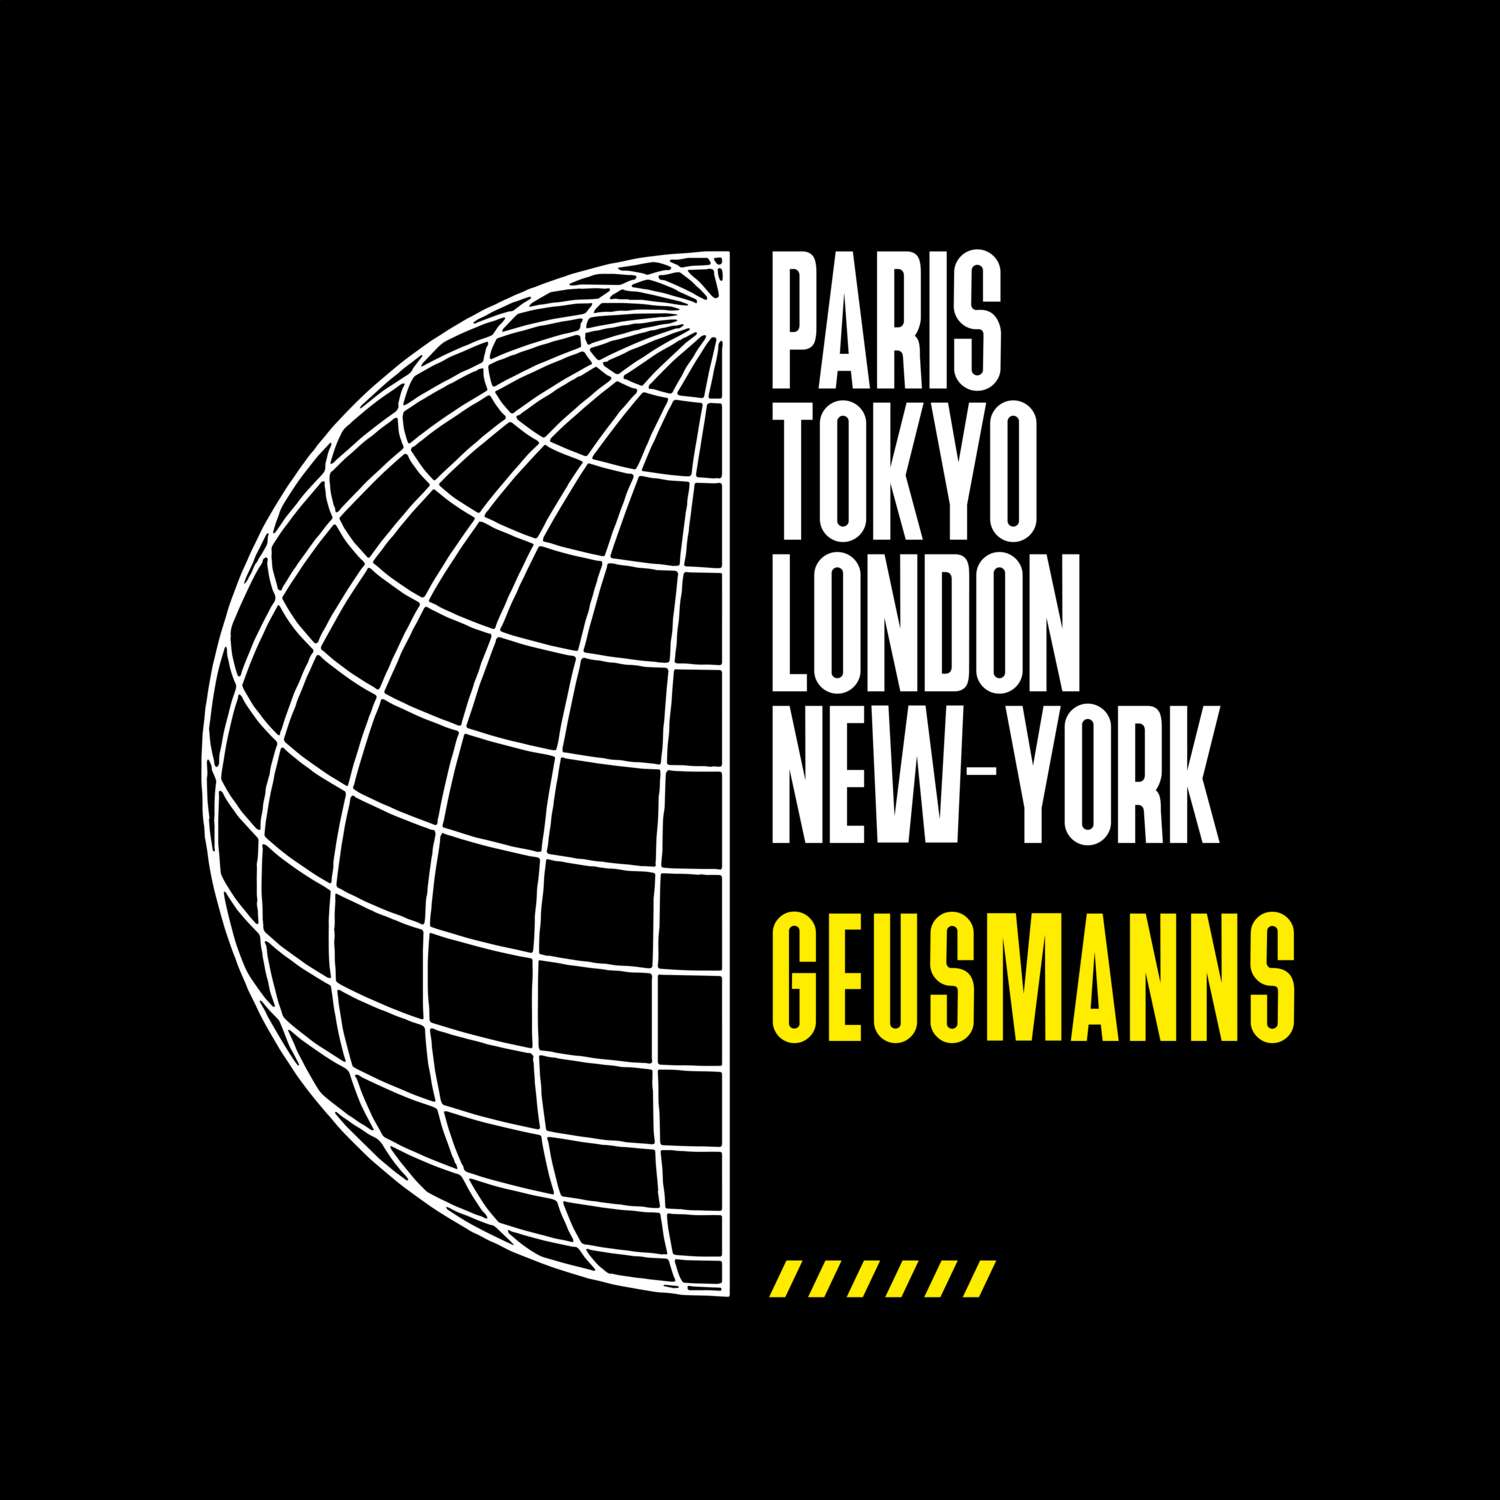 Geusmanns T-Shirt »Paris Tokyo London«